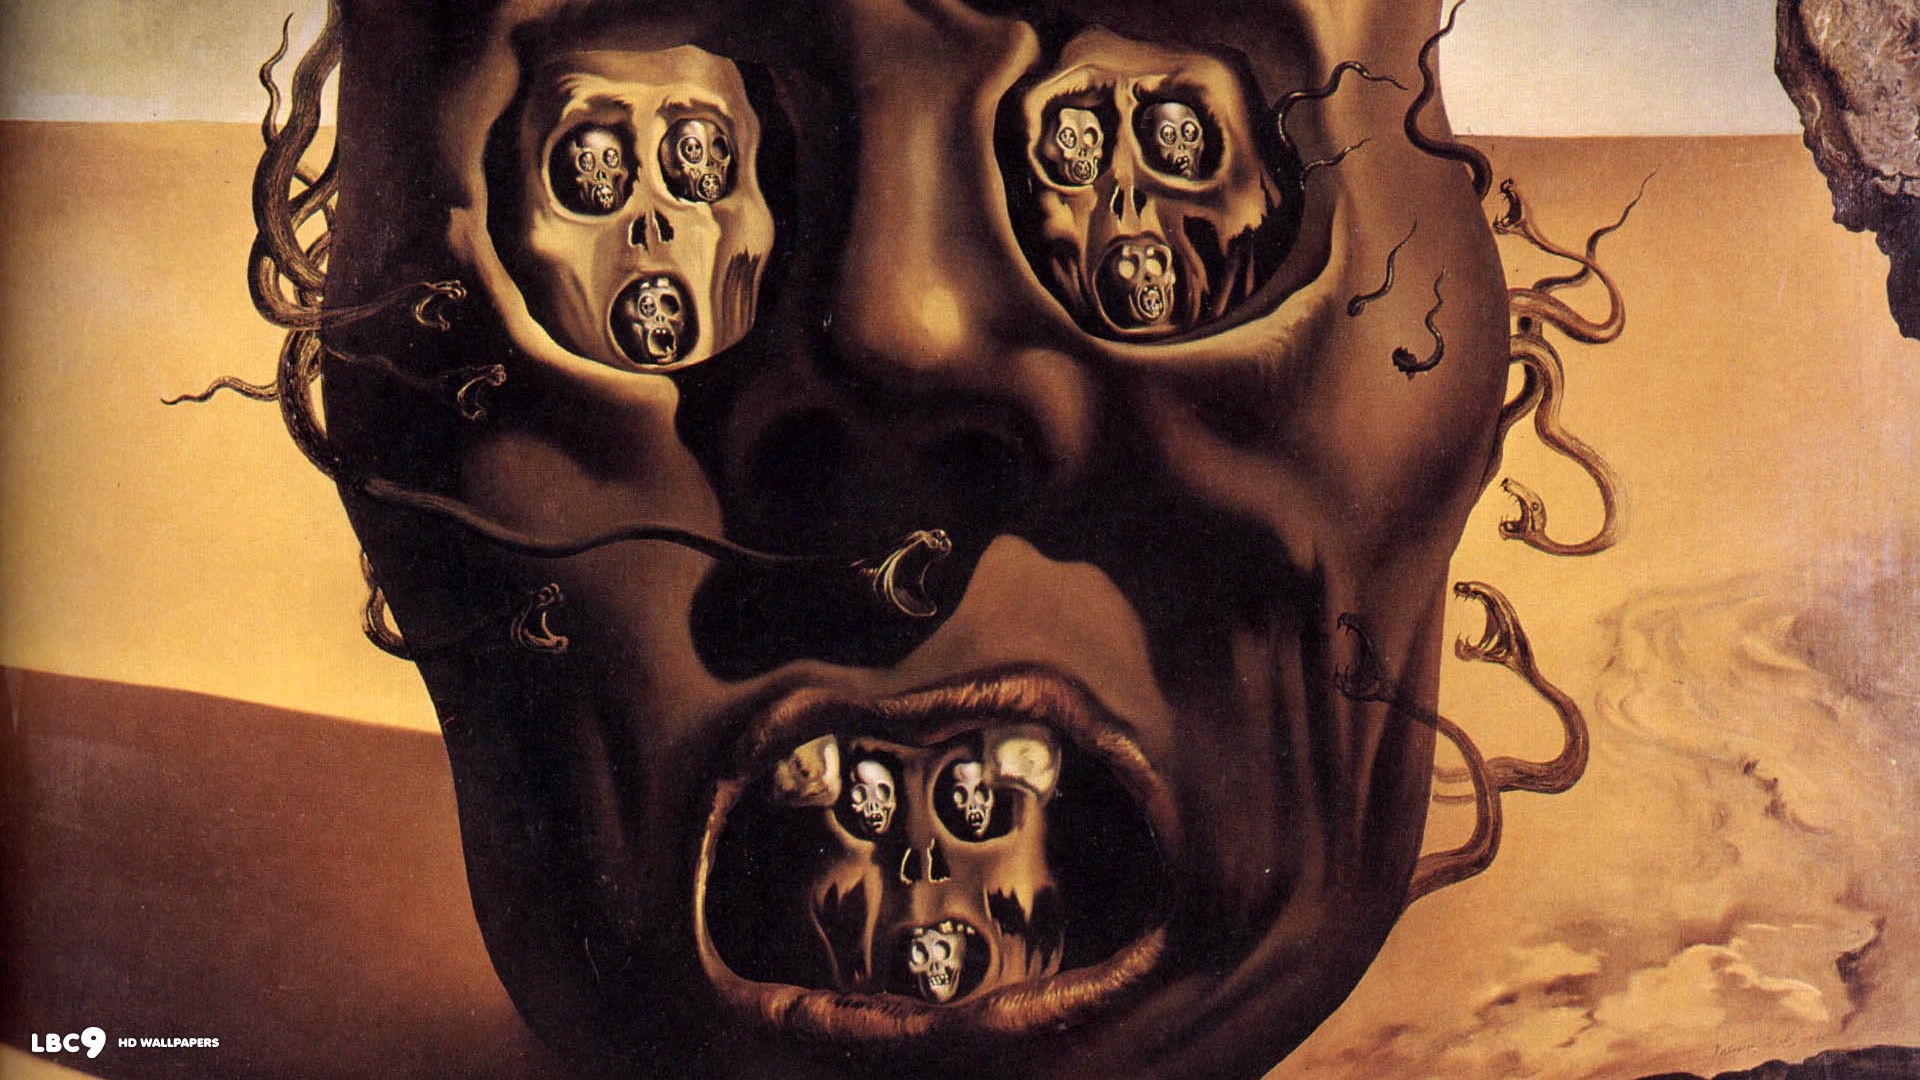 Salvador Dalí, Painting, Fantasy Art, Skull, War, Clocks, Time, Surreal Wallpaper